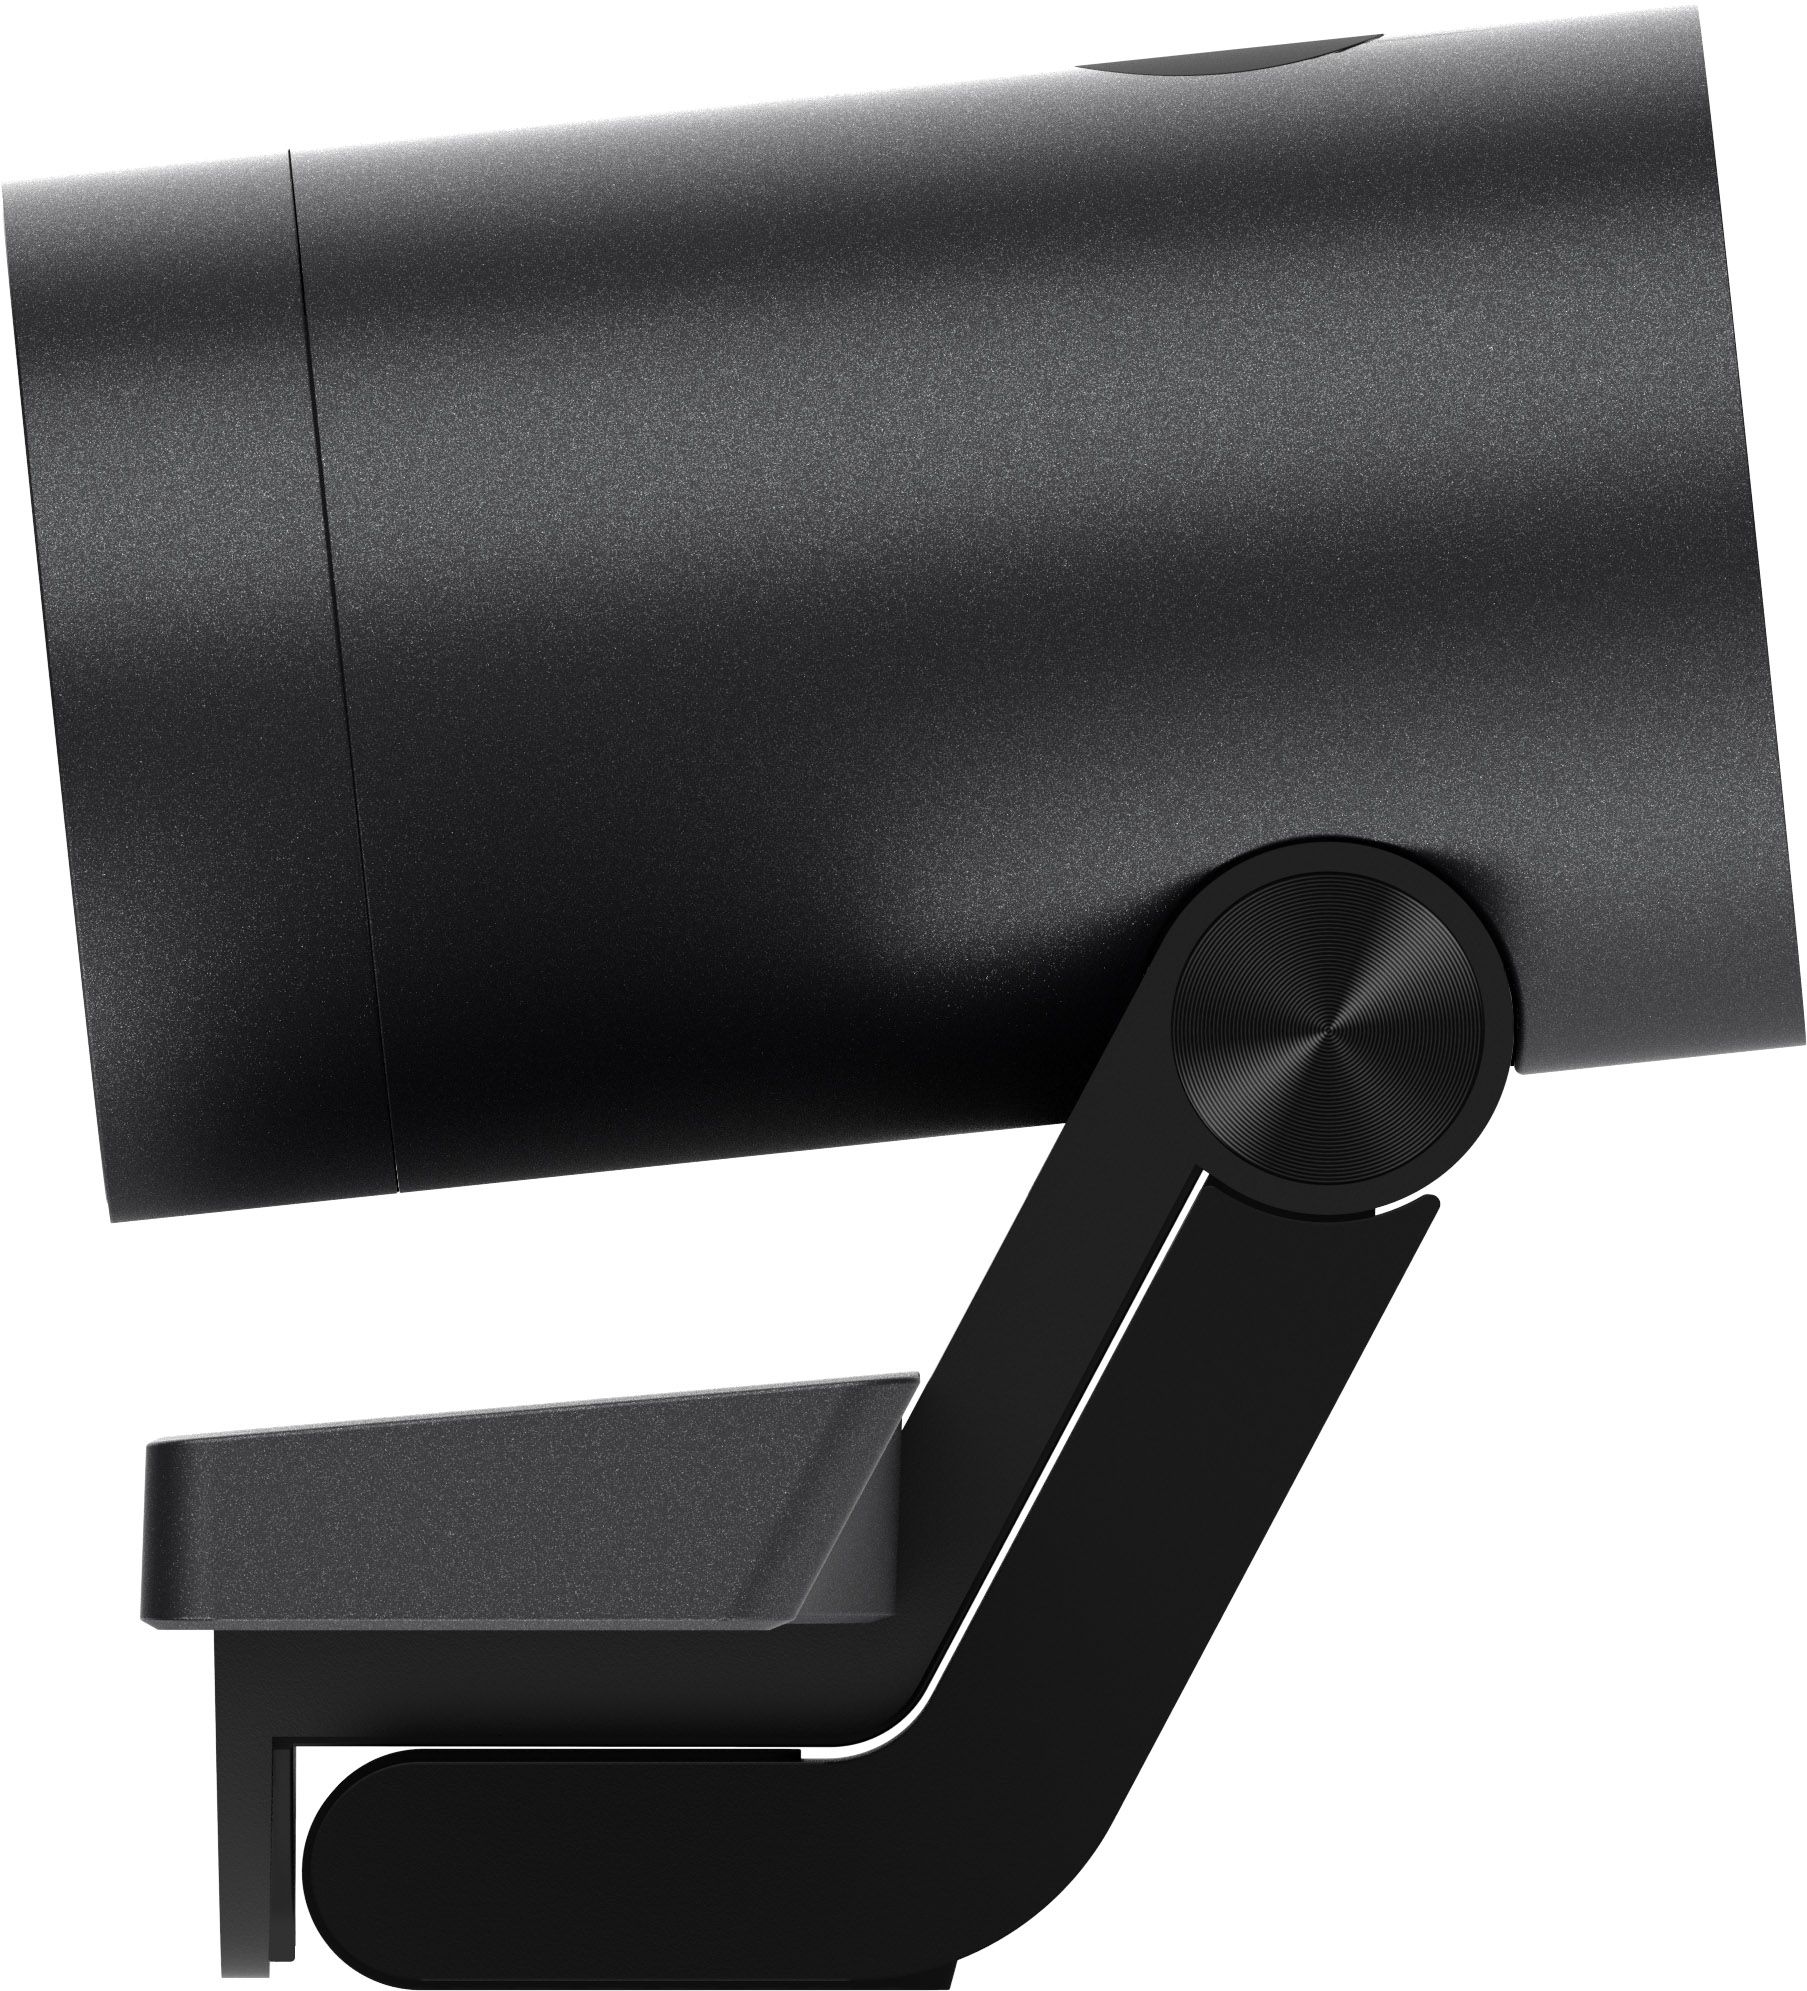 iiyama UC-CAM10PRO-MA1 - 4K Konferenz-Webcam - 8MP - USB-Kamera mit Mikrofon - 120° Sichtfeld - Auto-Framing - kleine und mittelgroße Räume